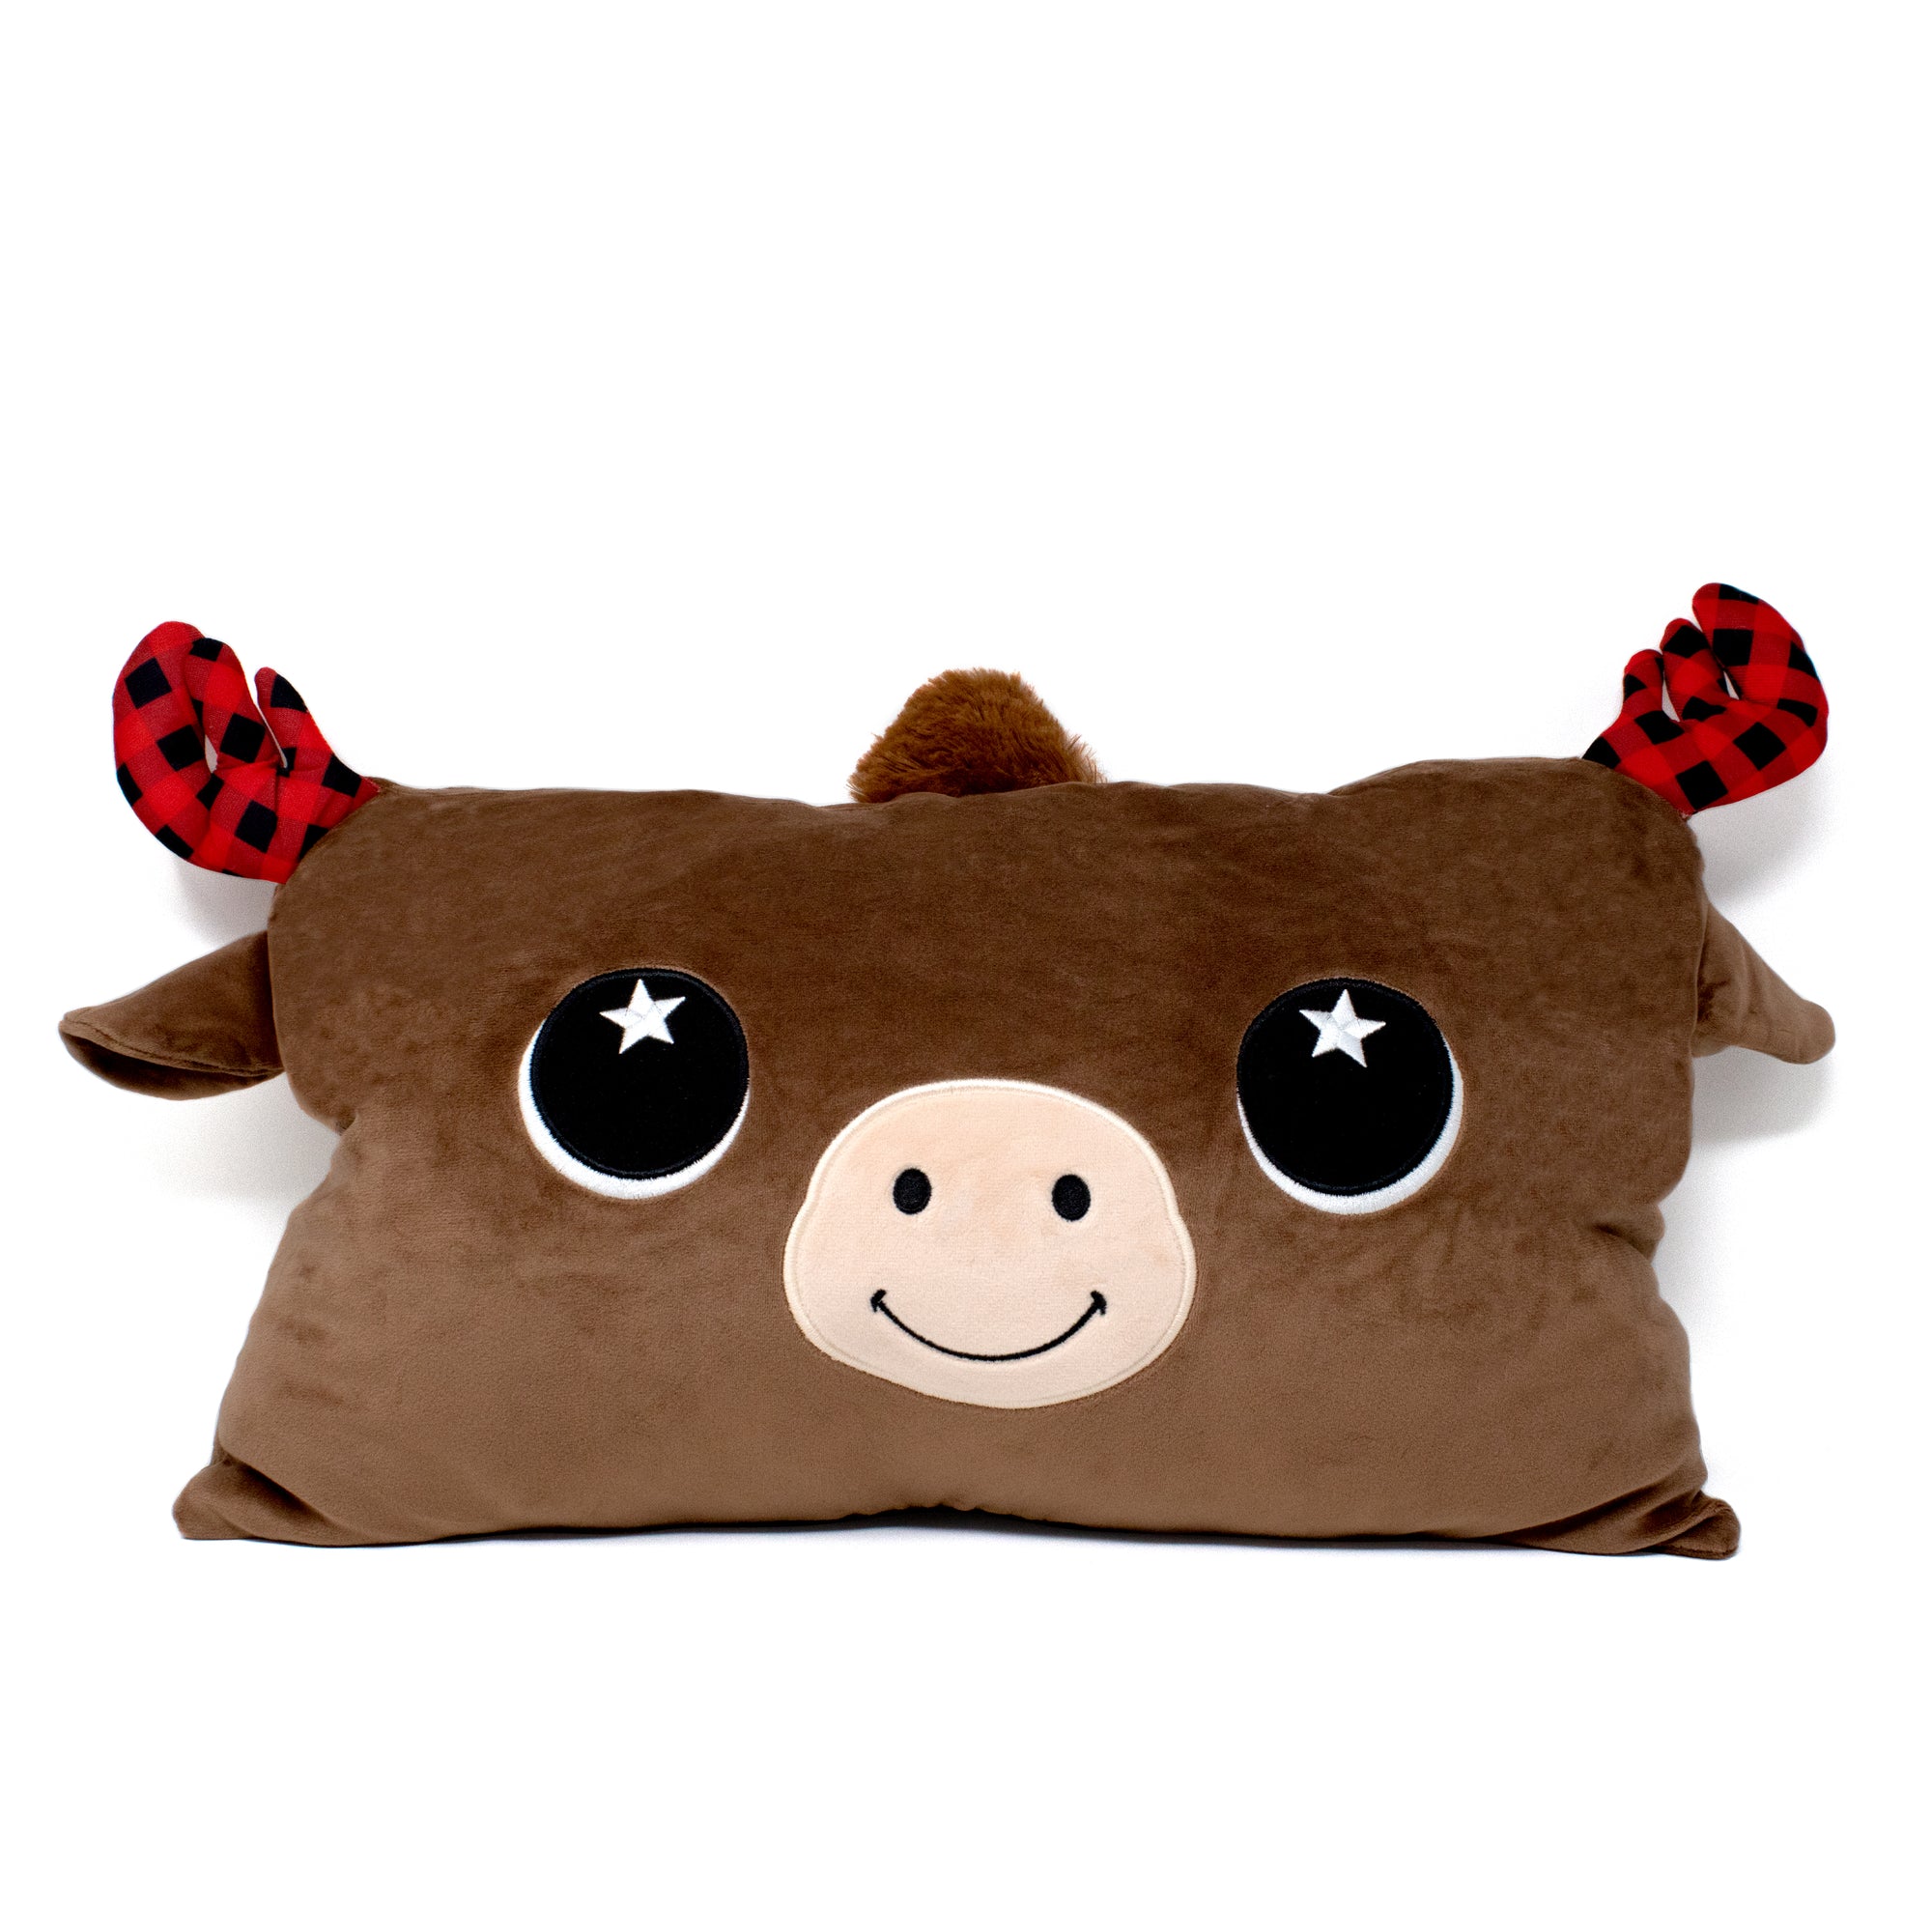 Eduard the Moose Pillow